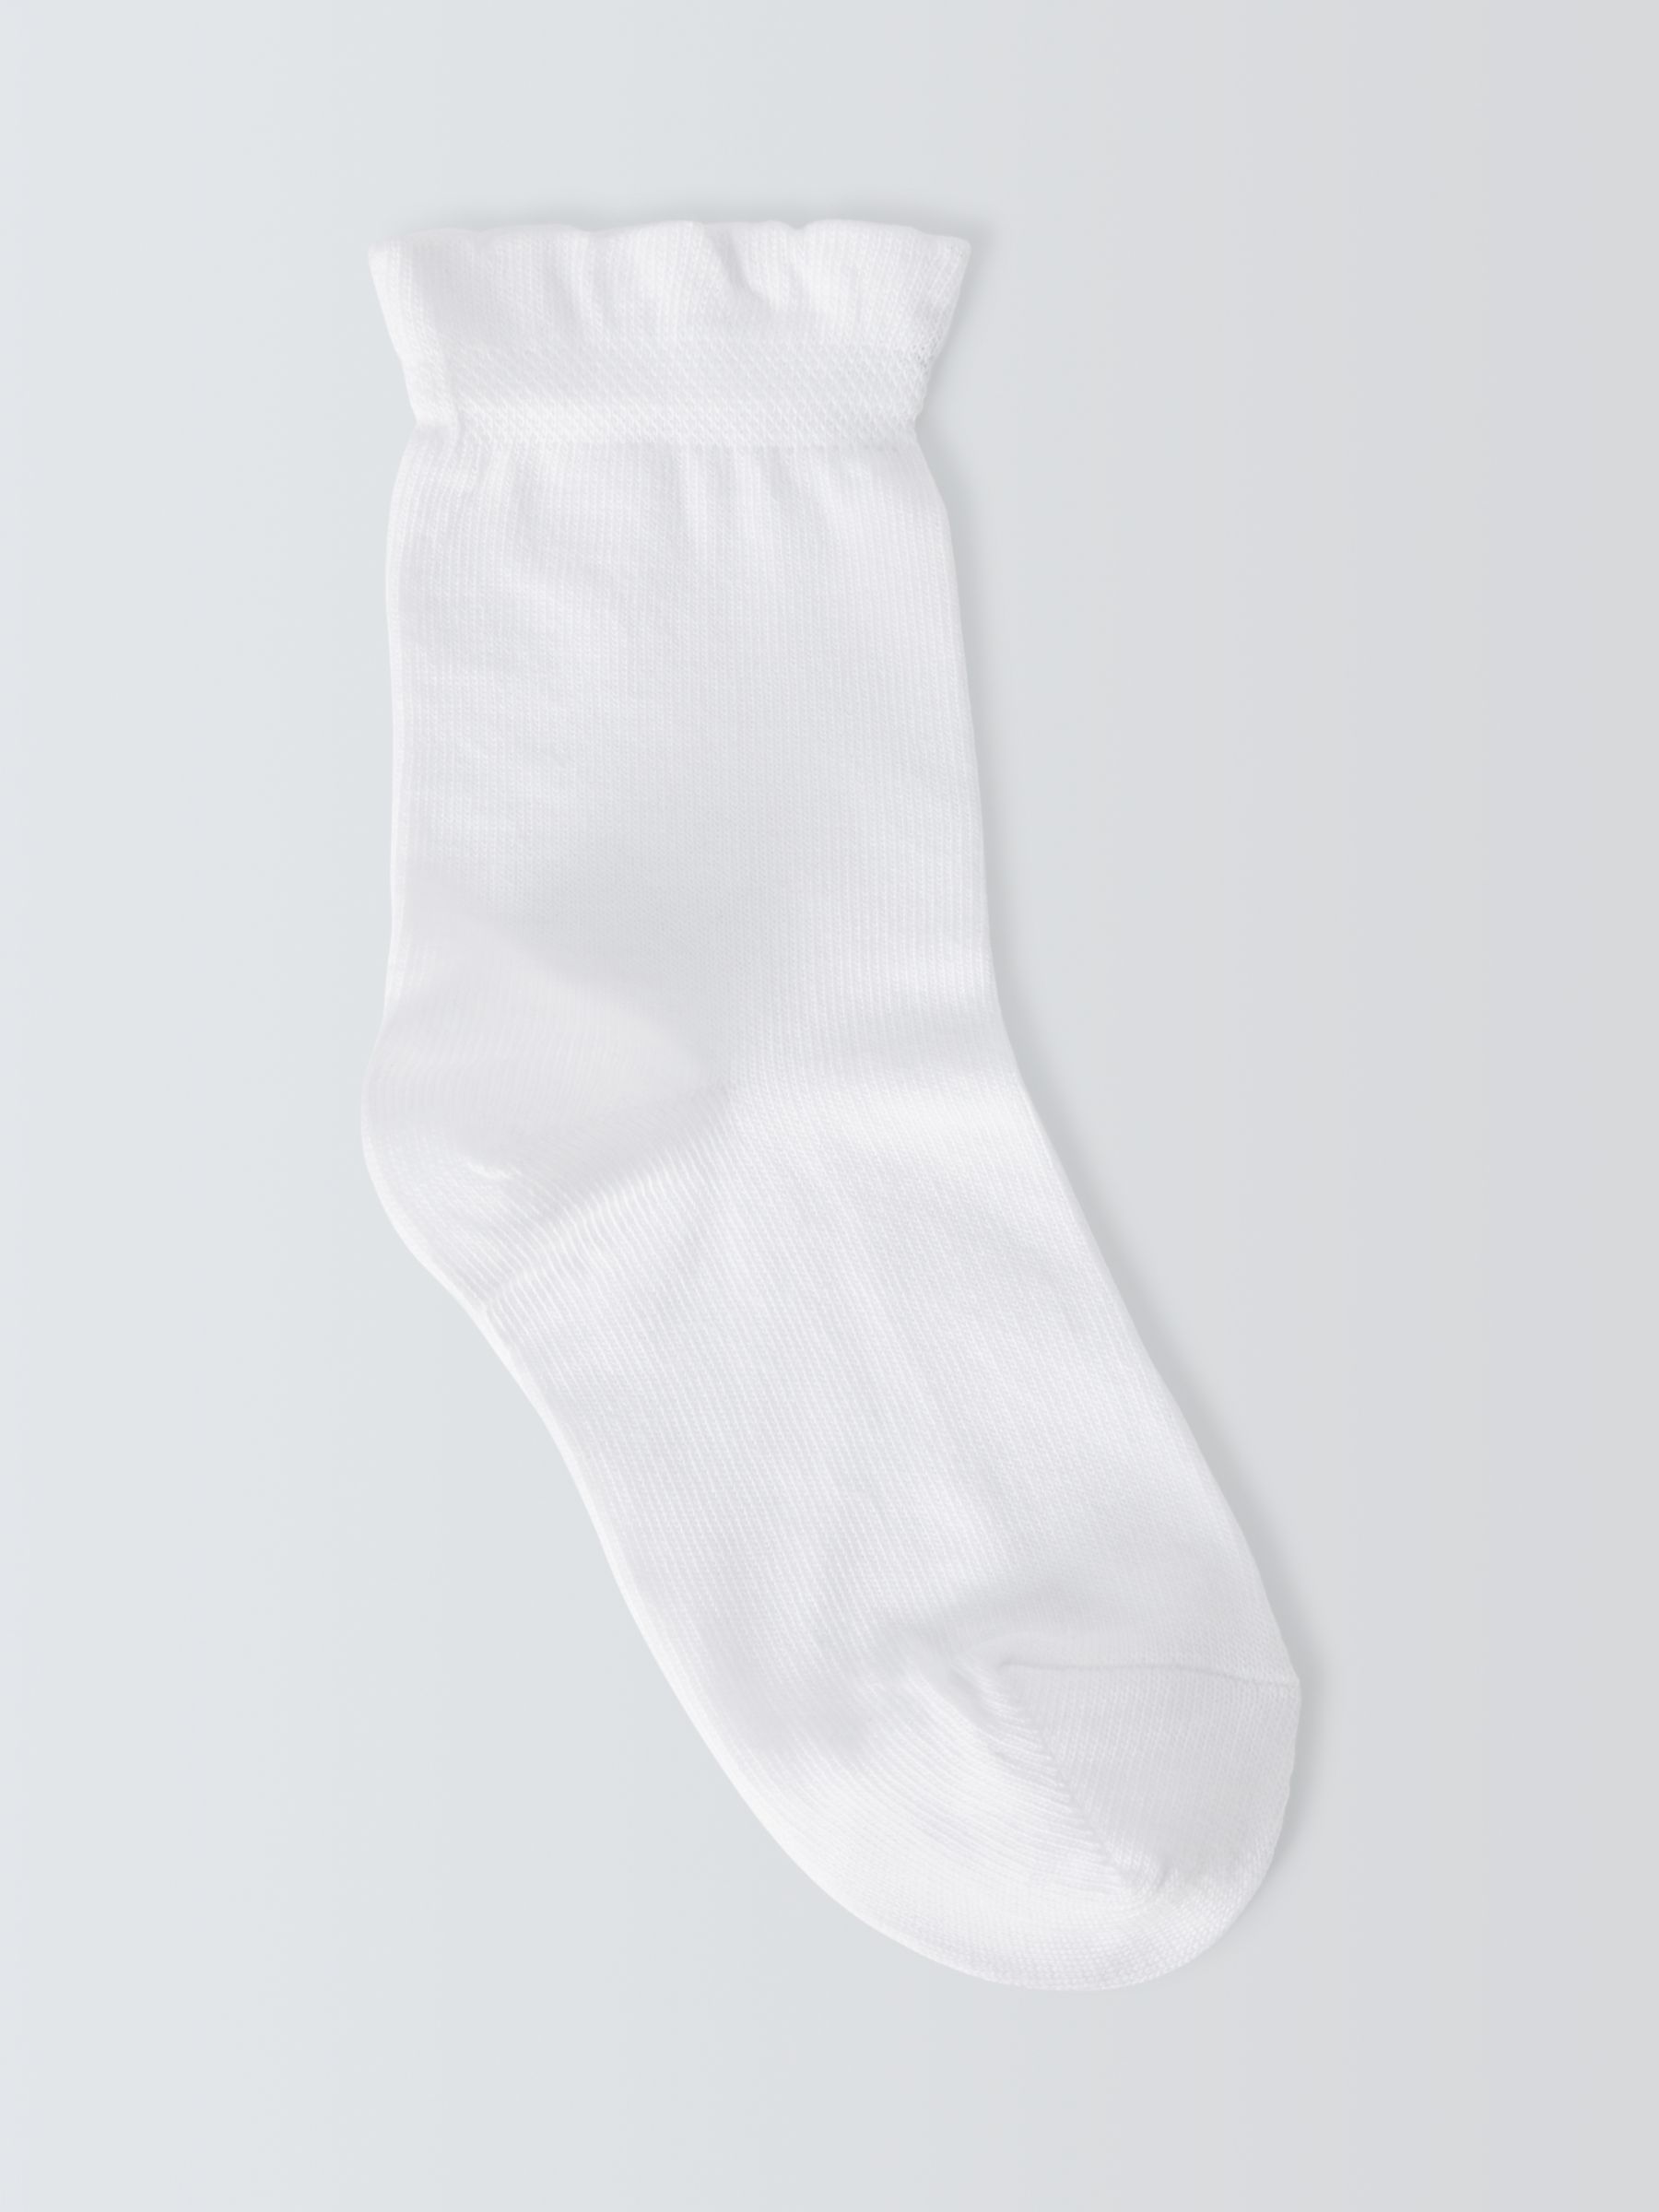 John Lewis Kids' Frill Top Socks, Pack of 5, White, 6-8.5 Jnr